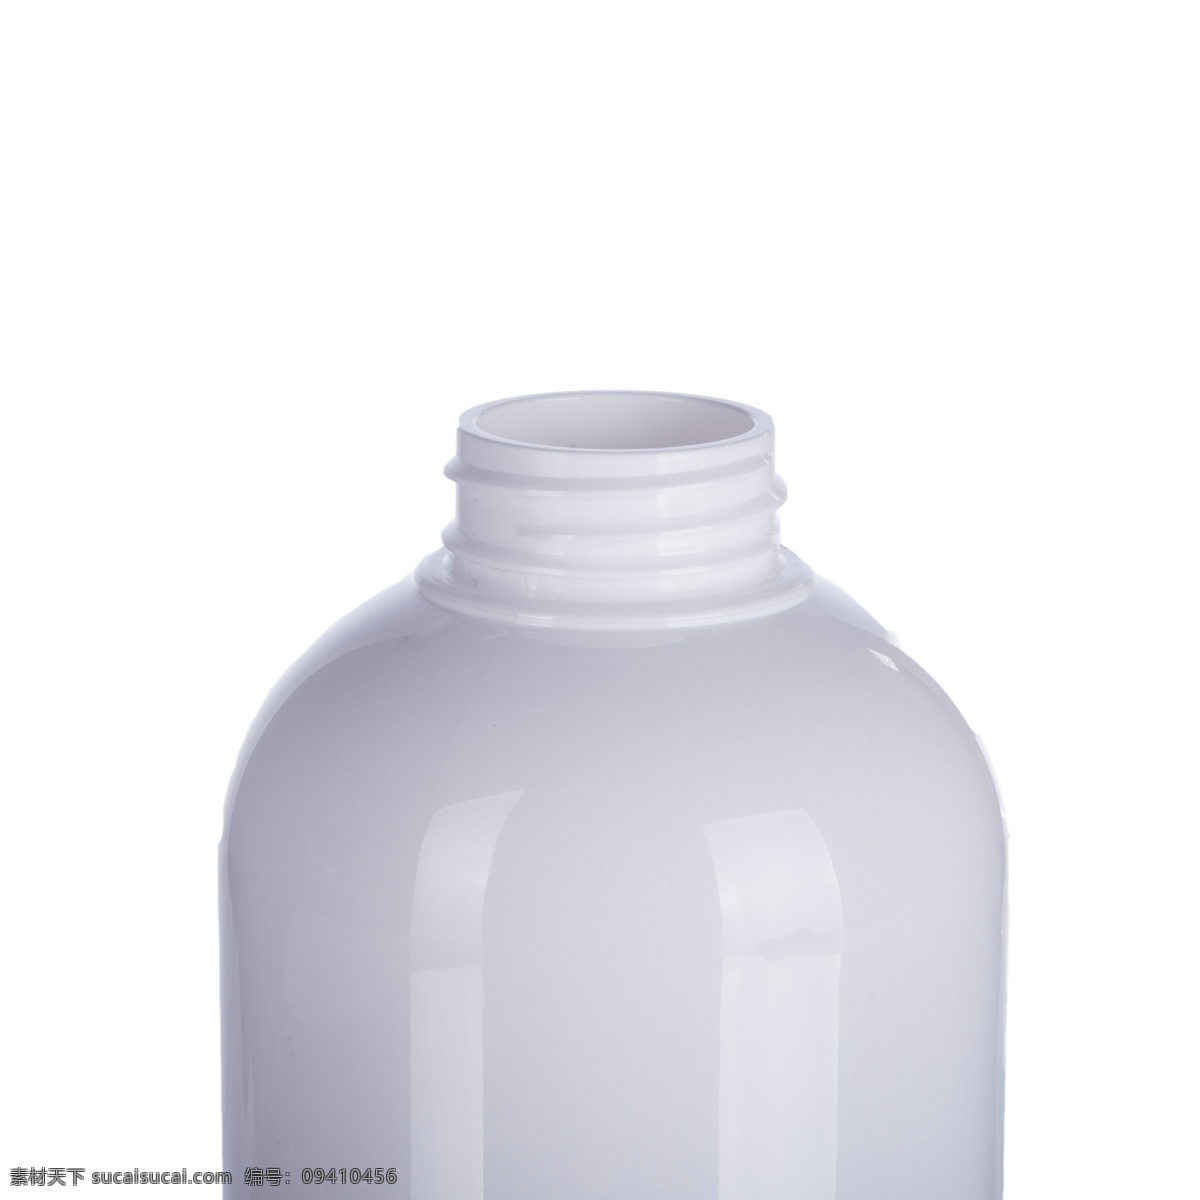 白 灰色 塑料 瓶子 白色瓶子 化妆品瓶子 塑料瓶 卡通插图 创意卡通下载 插图 png图下载